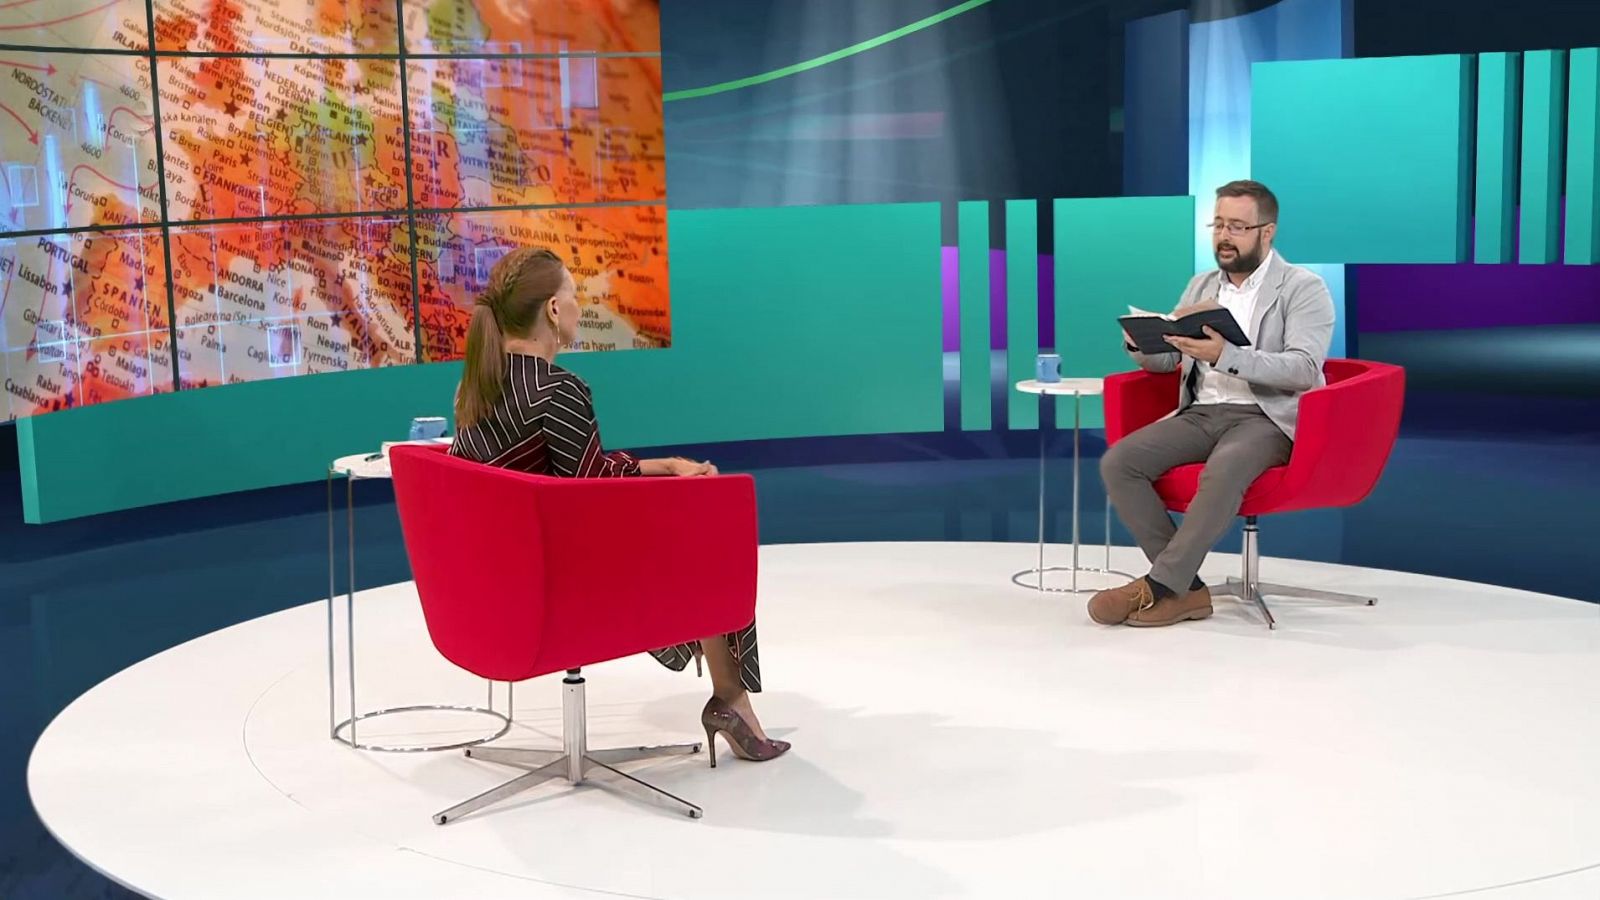 Buenas Noticias TV - Las misiones protestantes en España - ver ahora